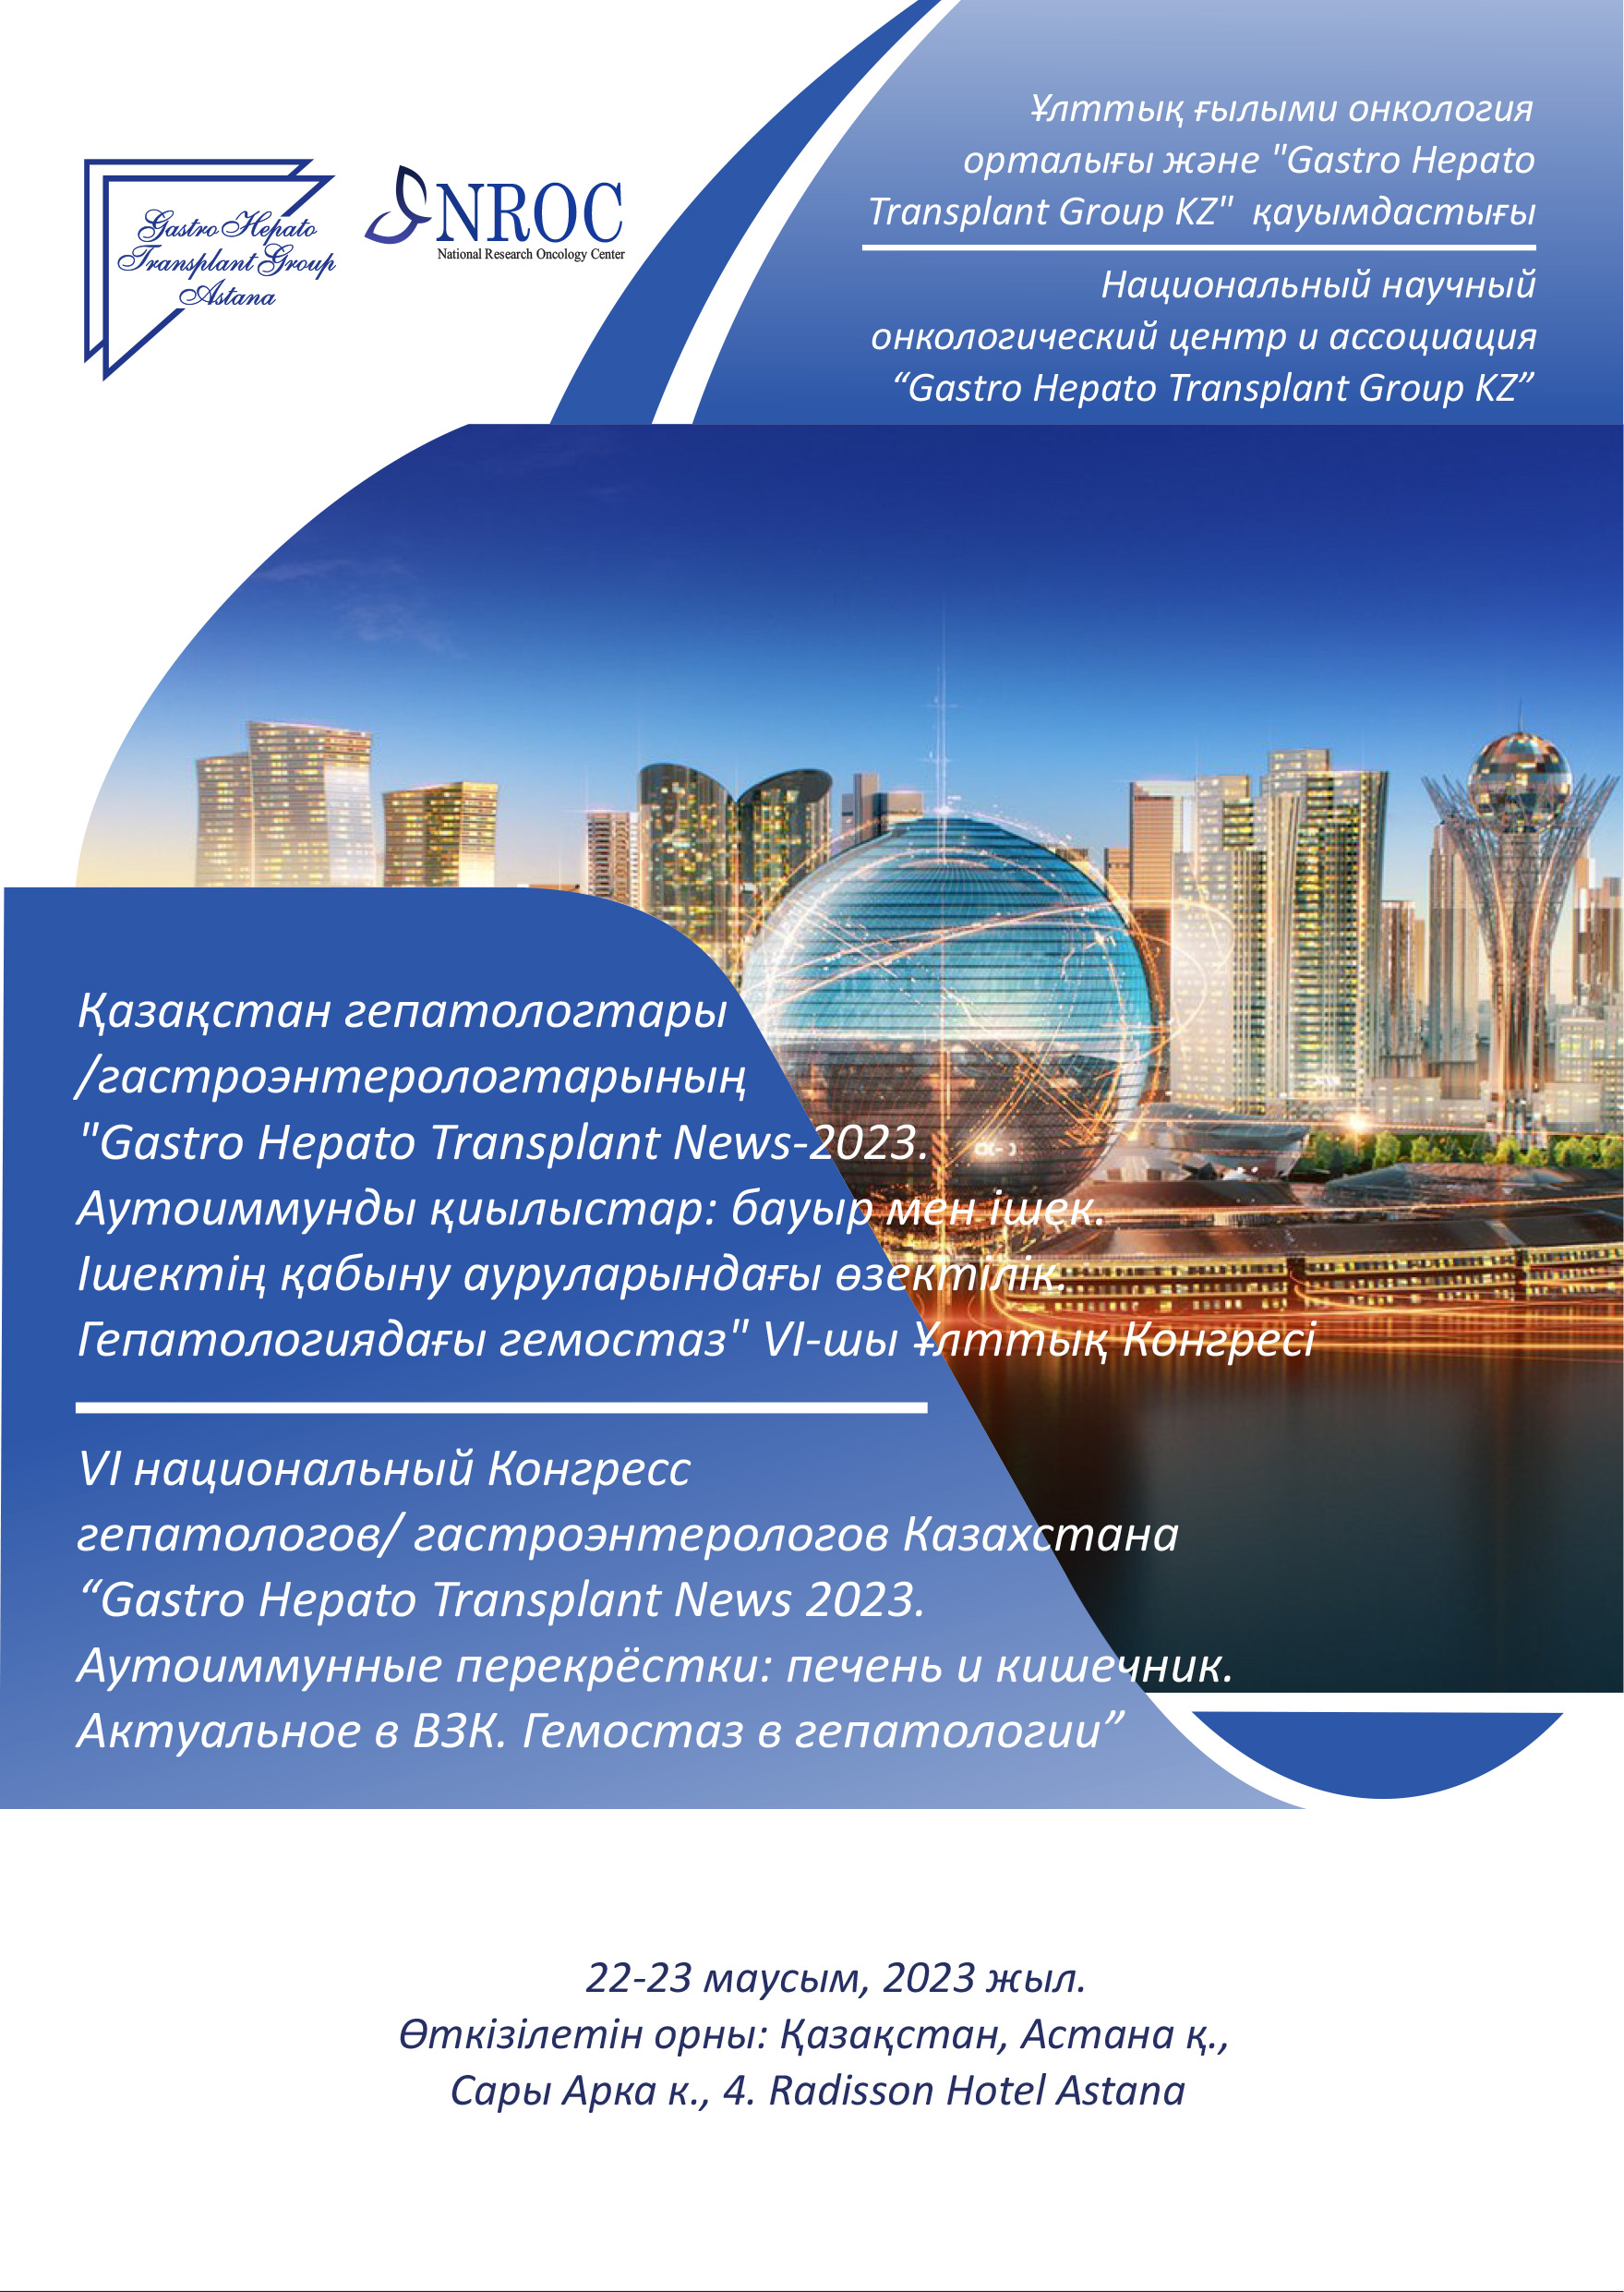 2023 жылғы 22-23 маусымда Астана қаласында Қазақстан гепатологтары/гастроэнтерологтарының 